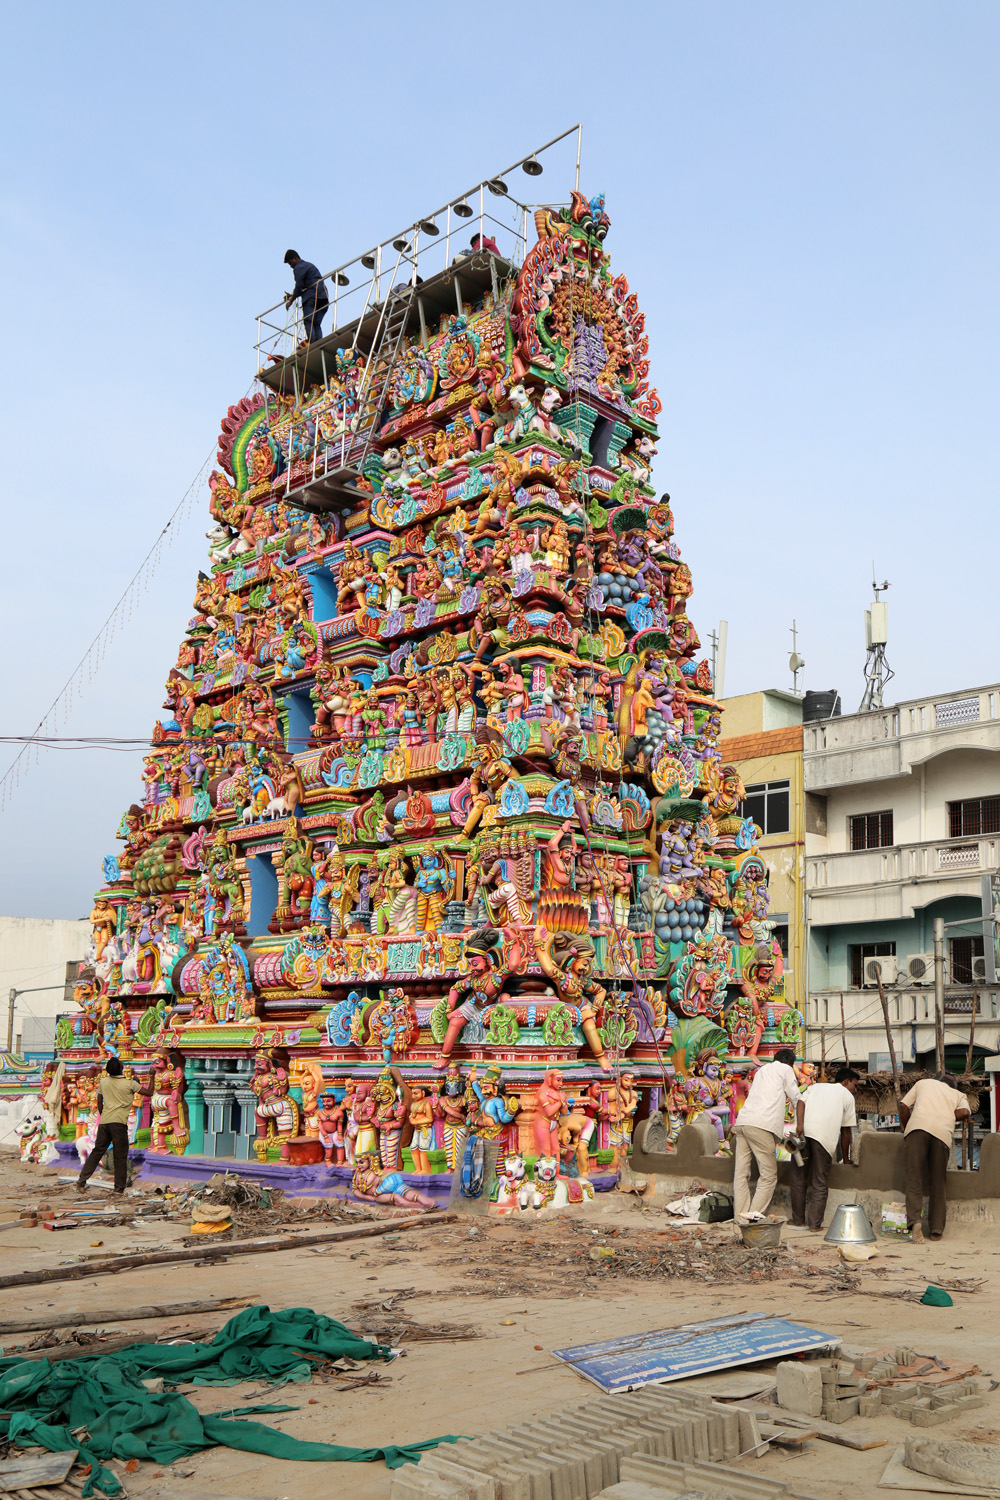 bill-hocker-vedapuheeswarar-temple-pondicherry-india-2018